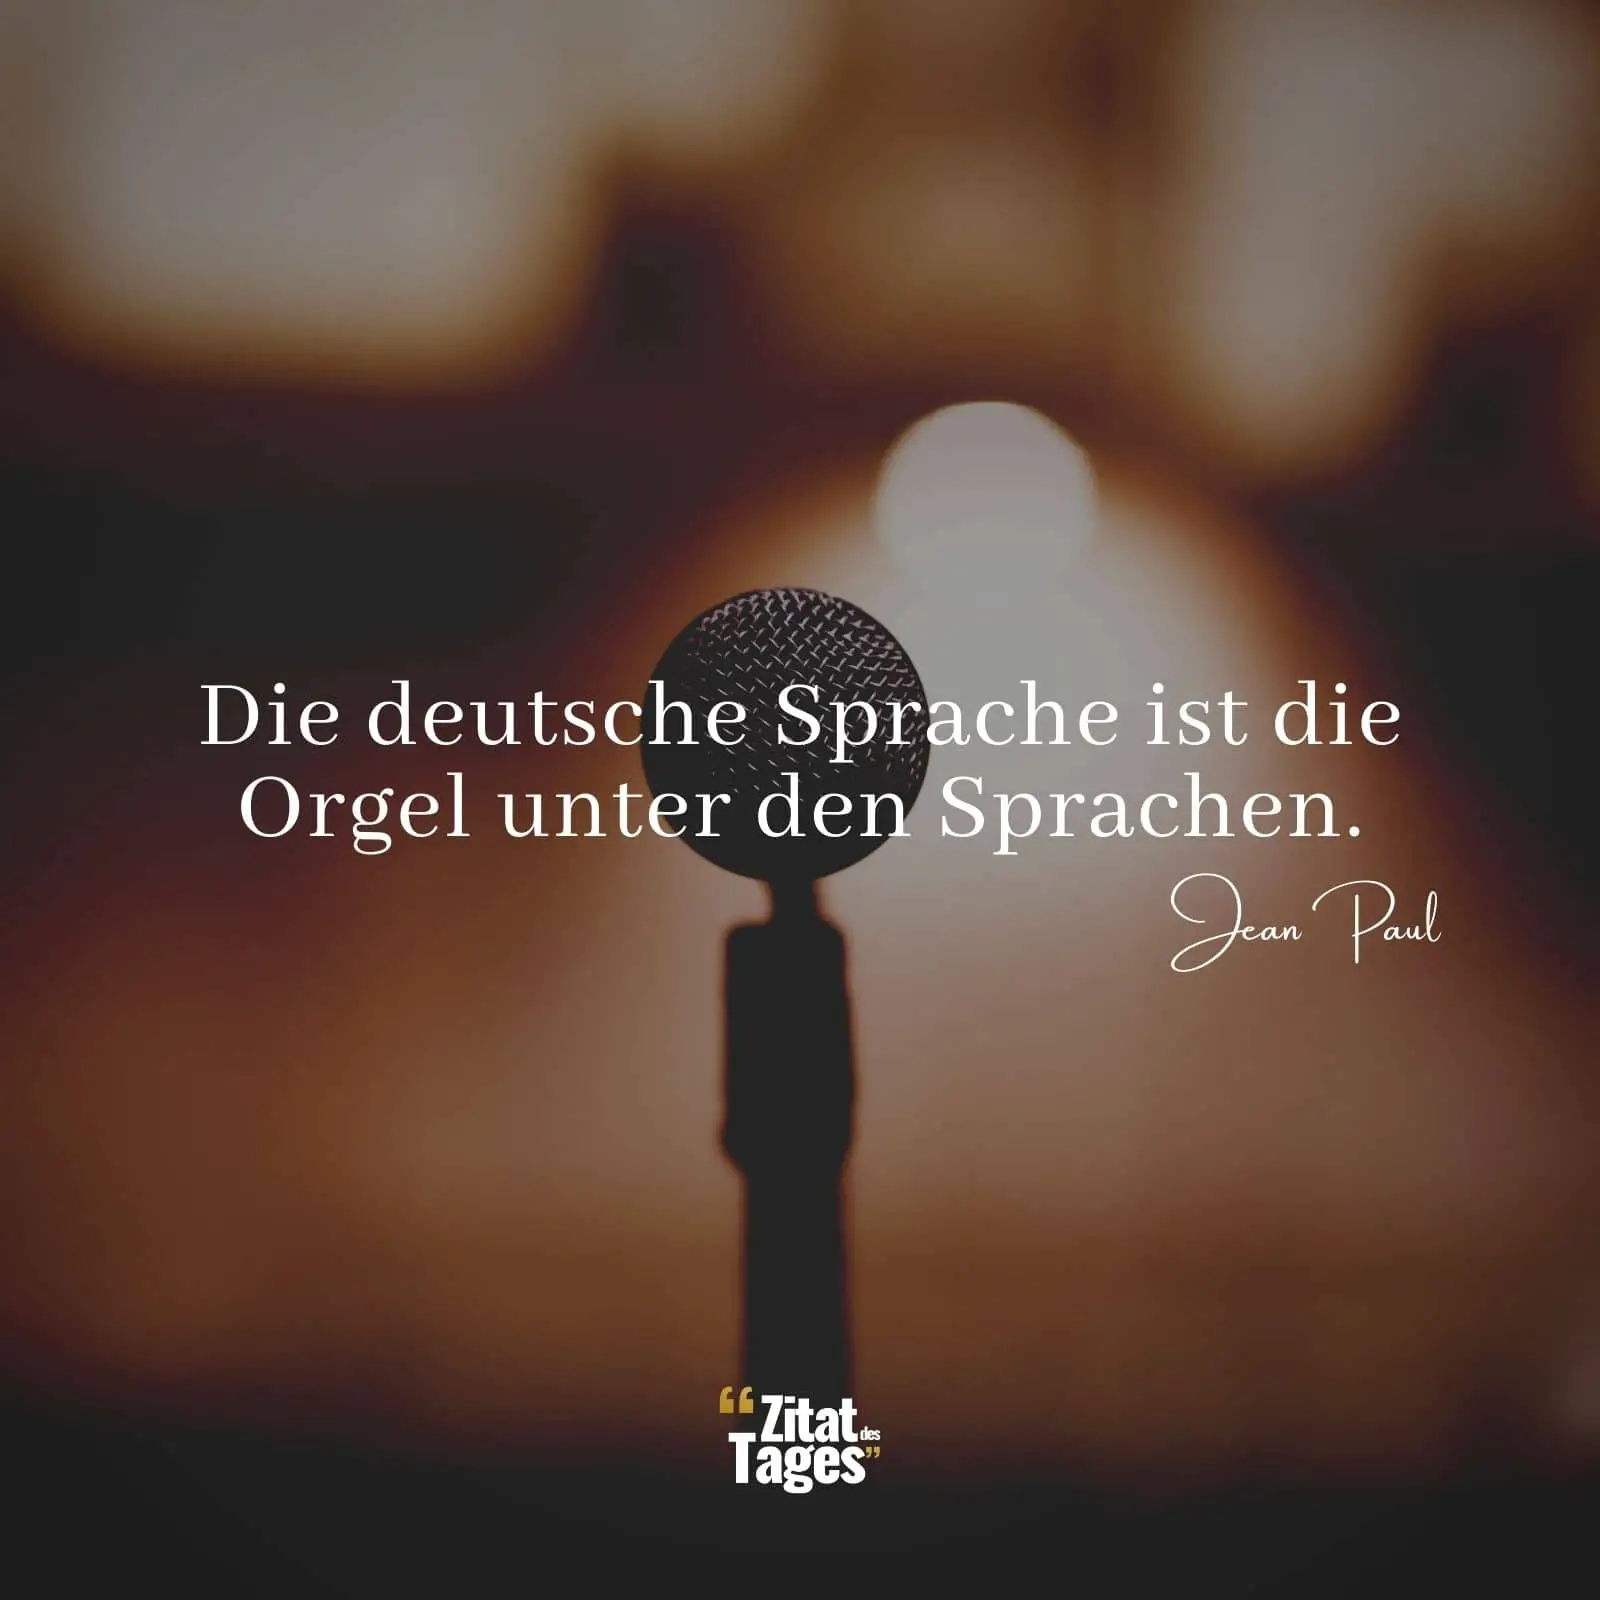 Die deutsche Sprache ist die Orgel unter den Sprachen. - Jean Paul